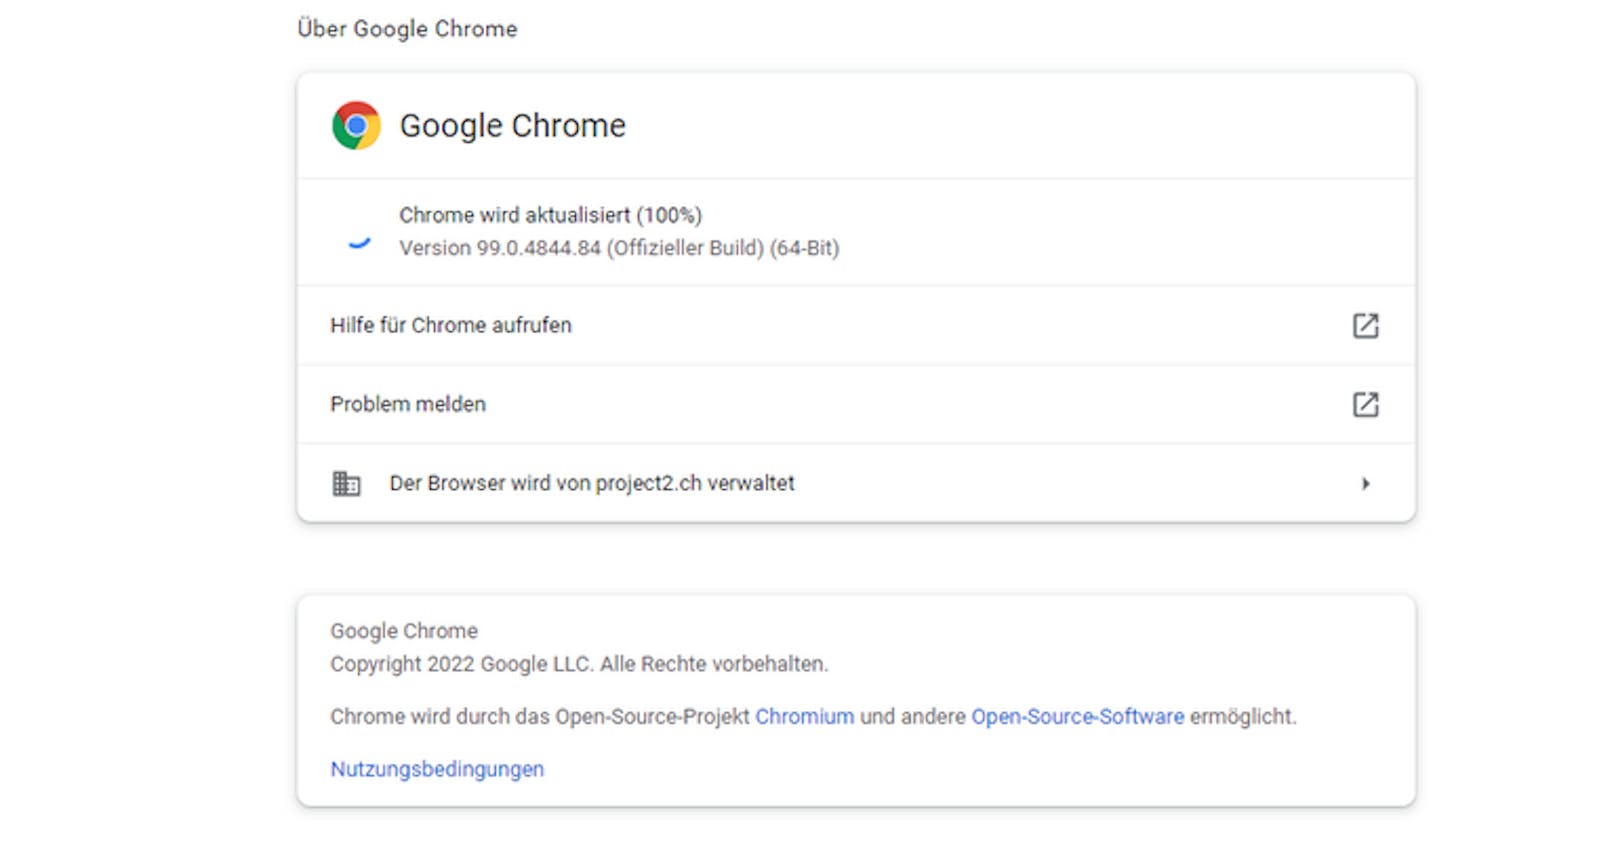 Fürs Update drückt man im Browser rechts oben auf die drei Punkte und wählt dann "Hilfe &gt; Über Google Chrome" aus.